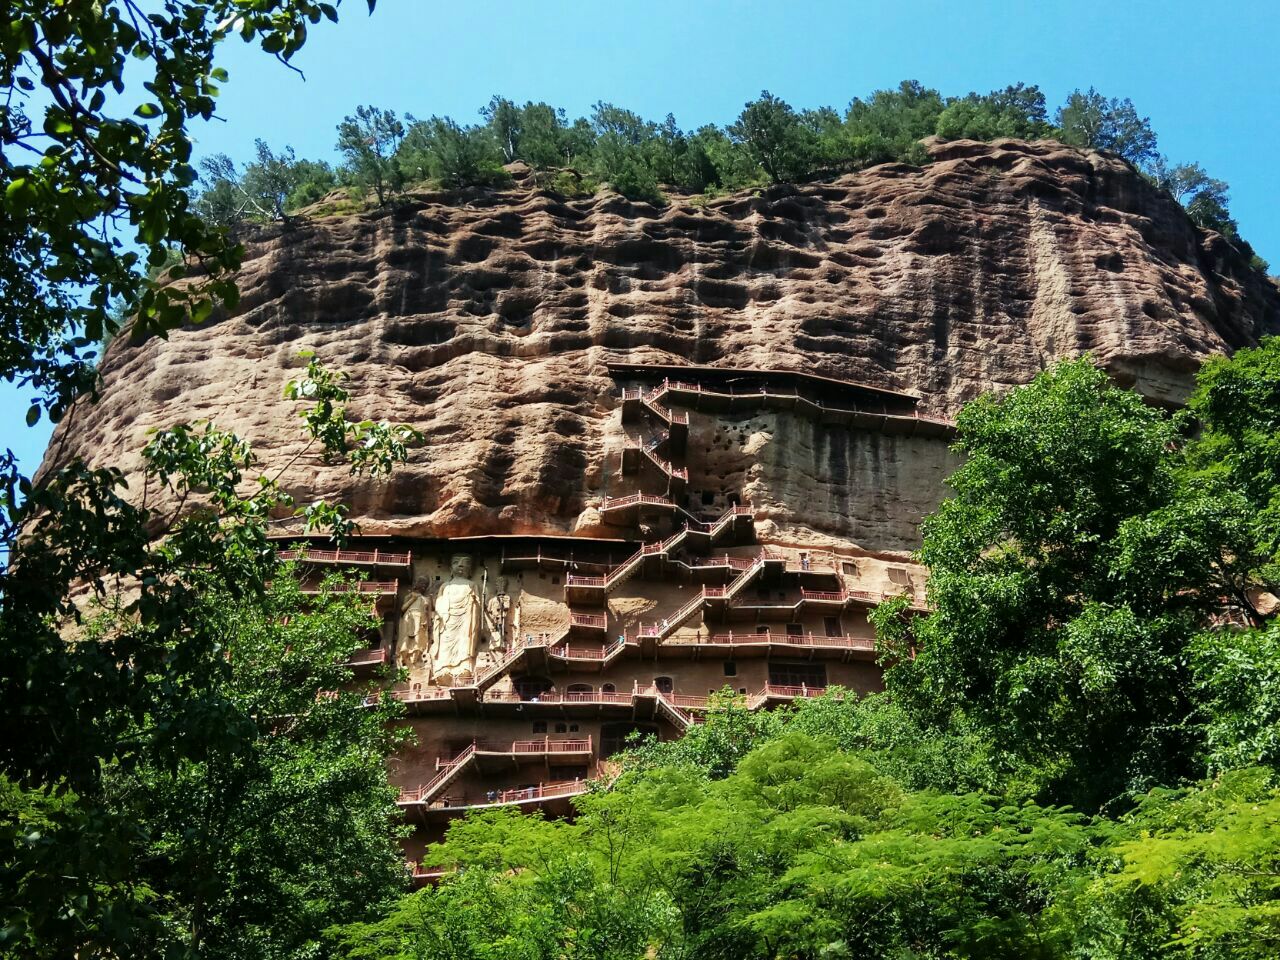 麦积山石窟是以泥塑闻名的四大石窟之一